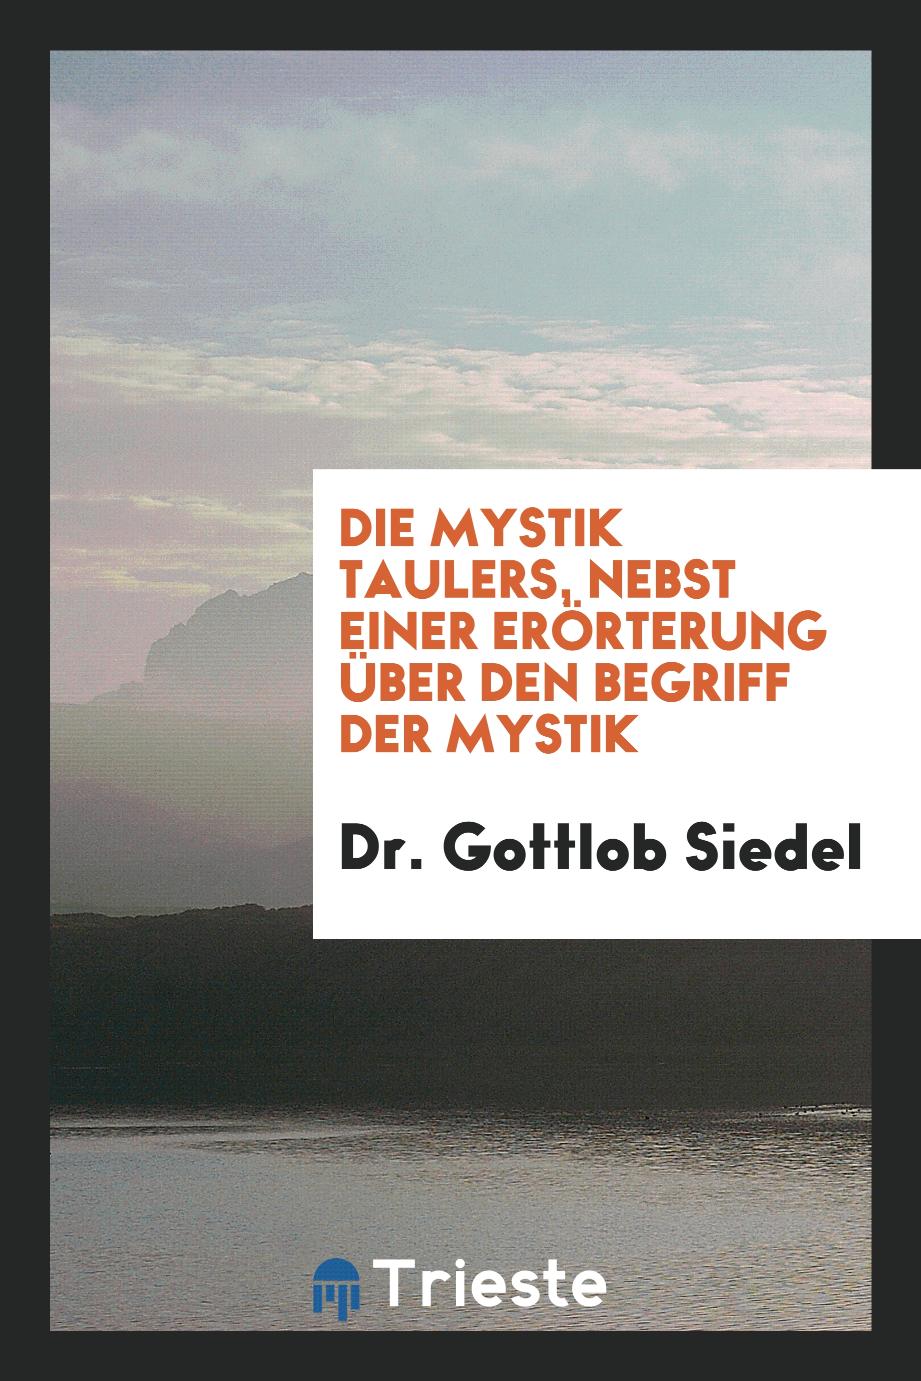 Dr. Gottlob Siedel - Die Mystik Taulers, Nebst Einer Erörterung über den Begriff der Mystik